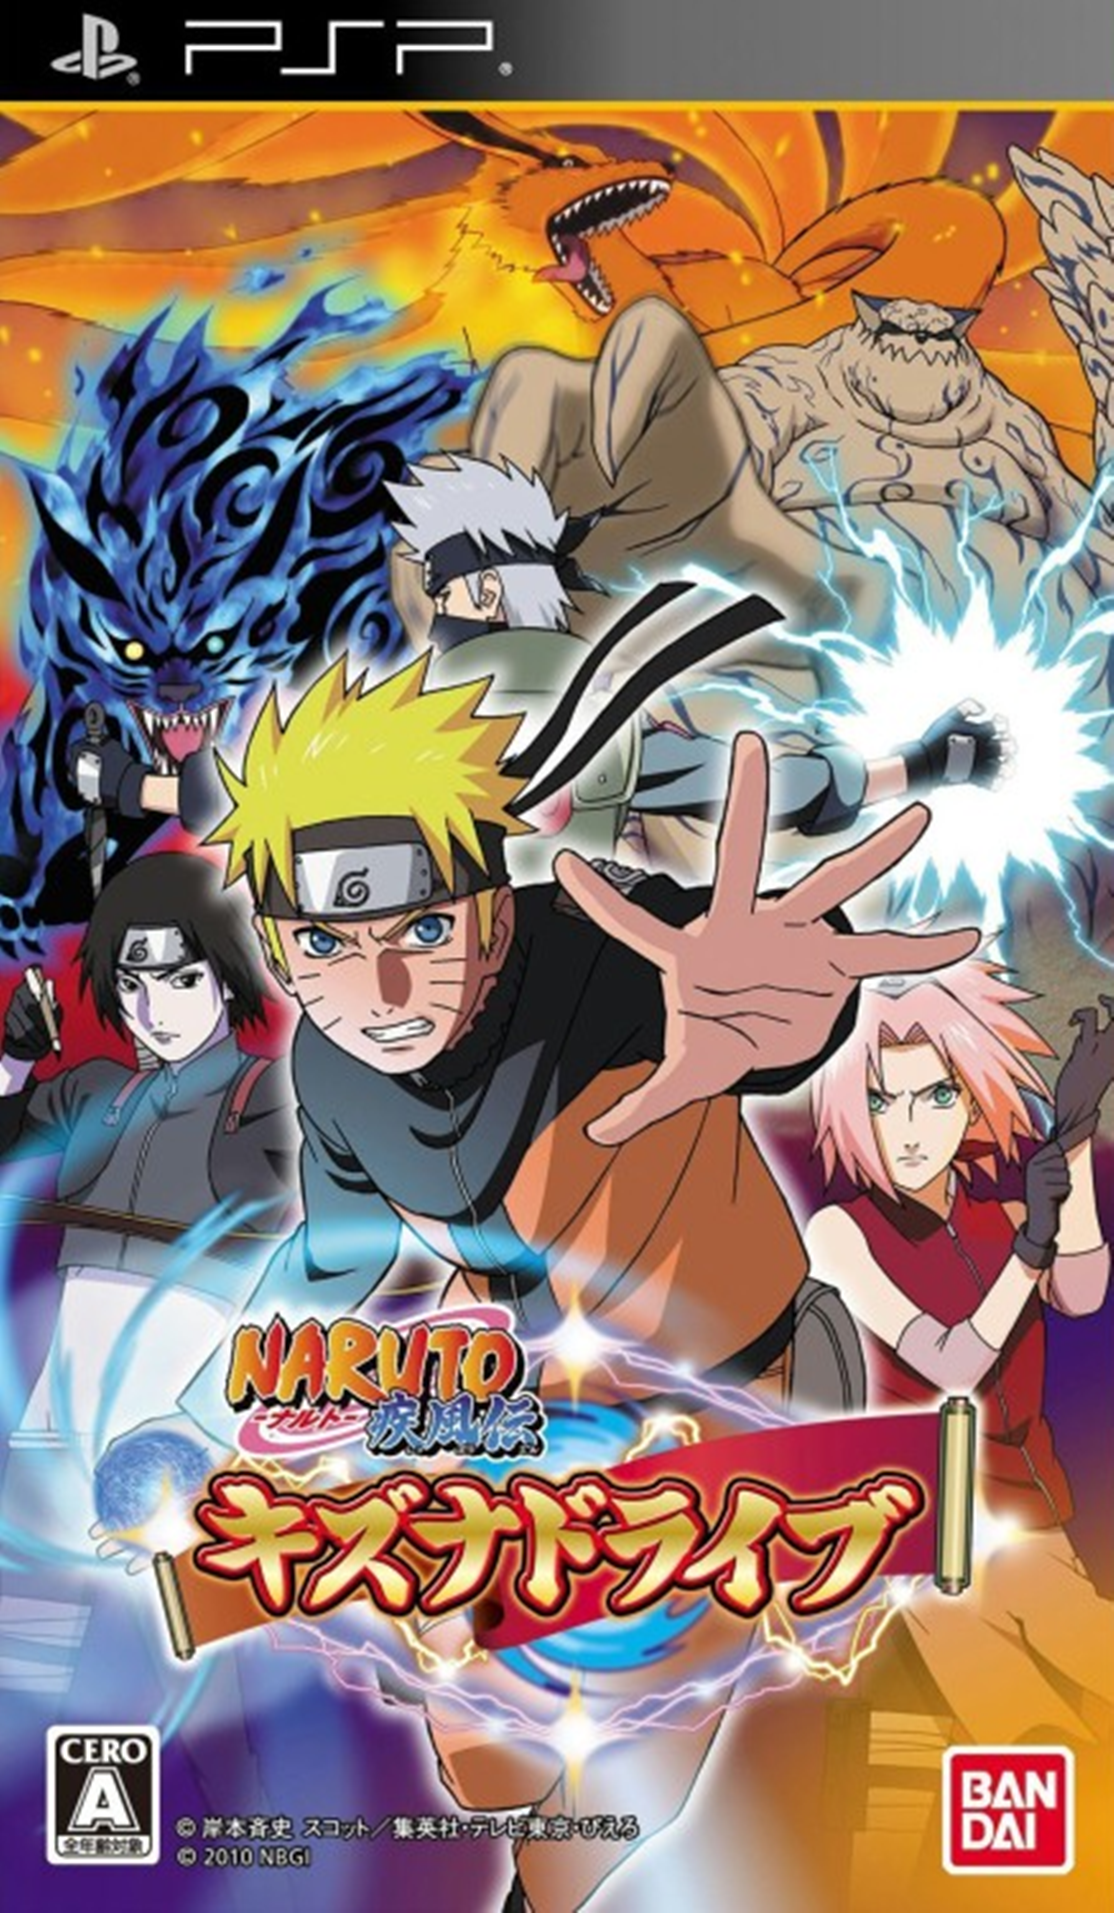 Naruto em japonês completo